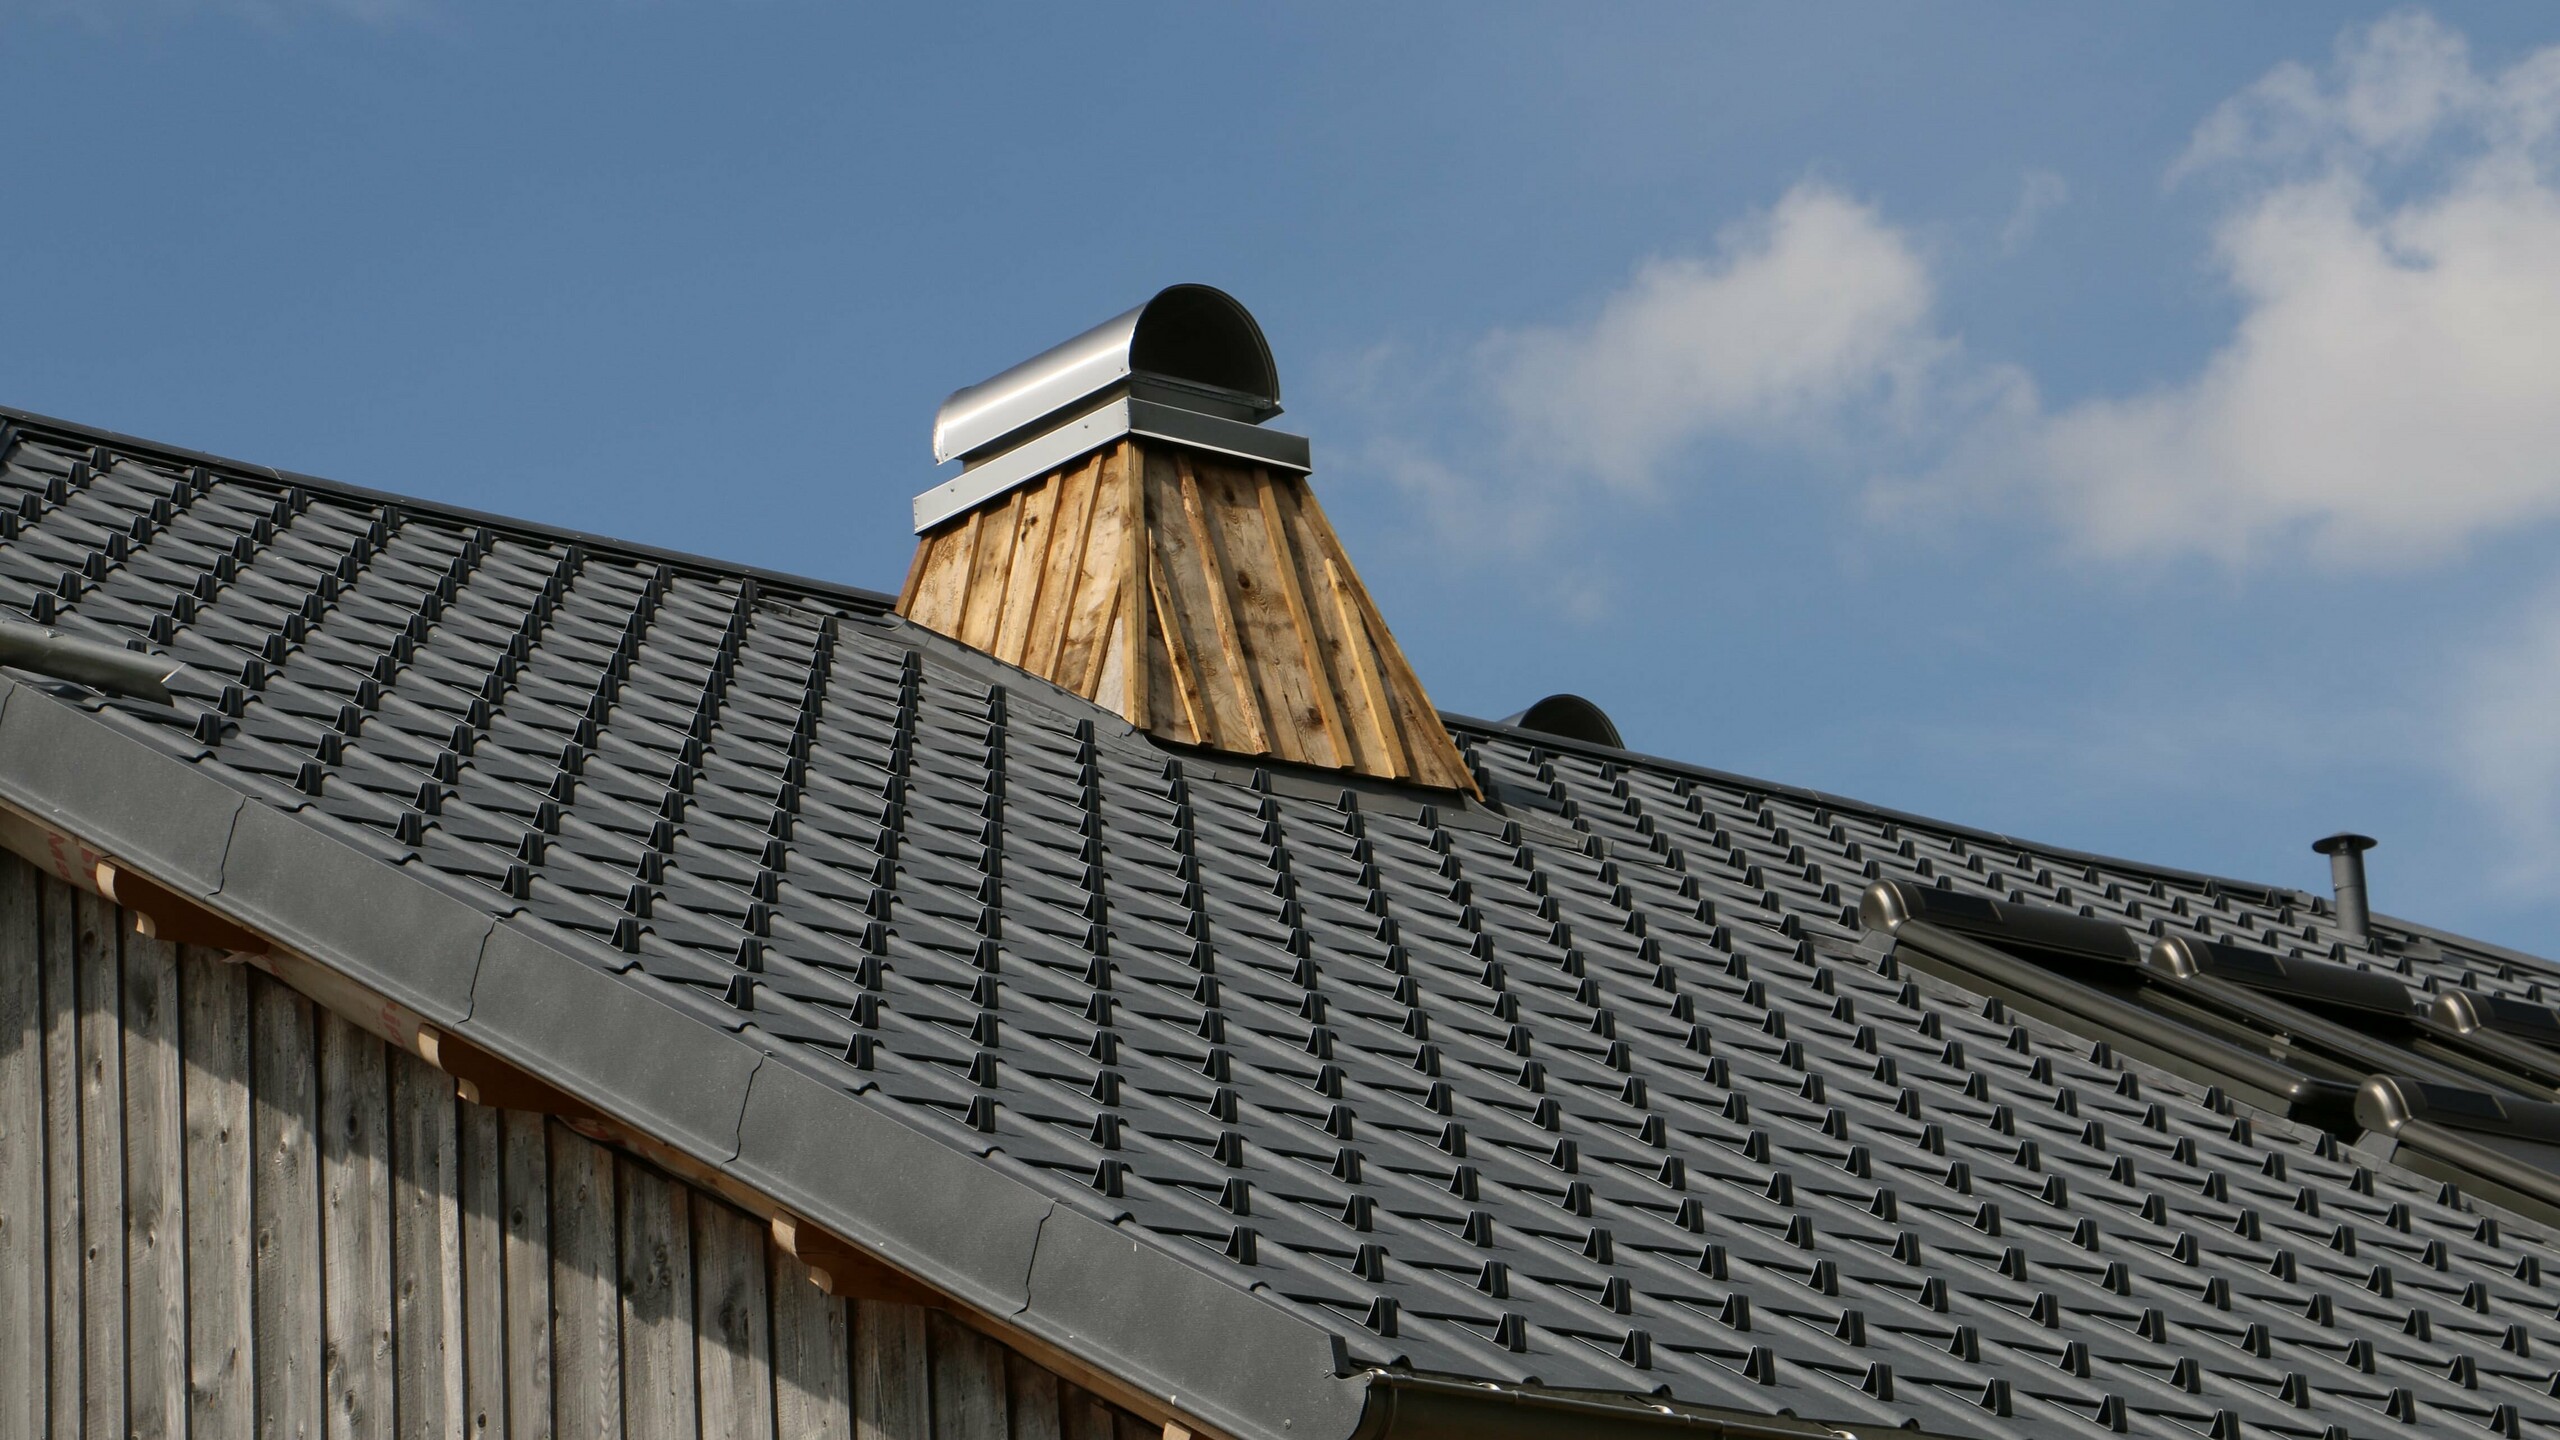 Prise de vue de détail de cheminée sur cette toiture rénovée en tuile prefa